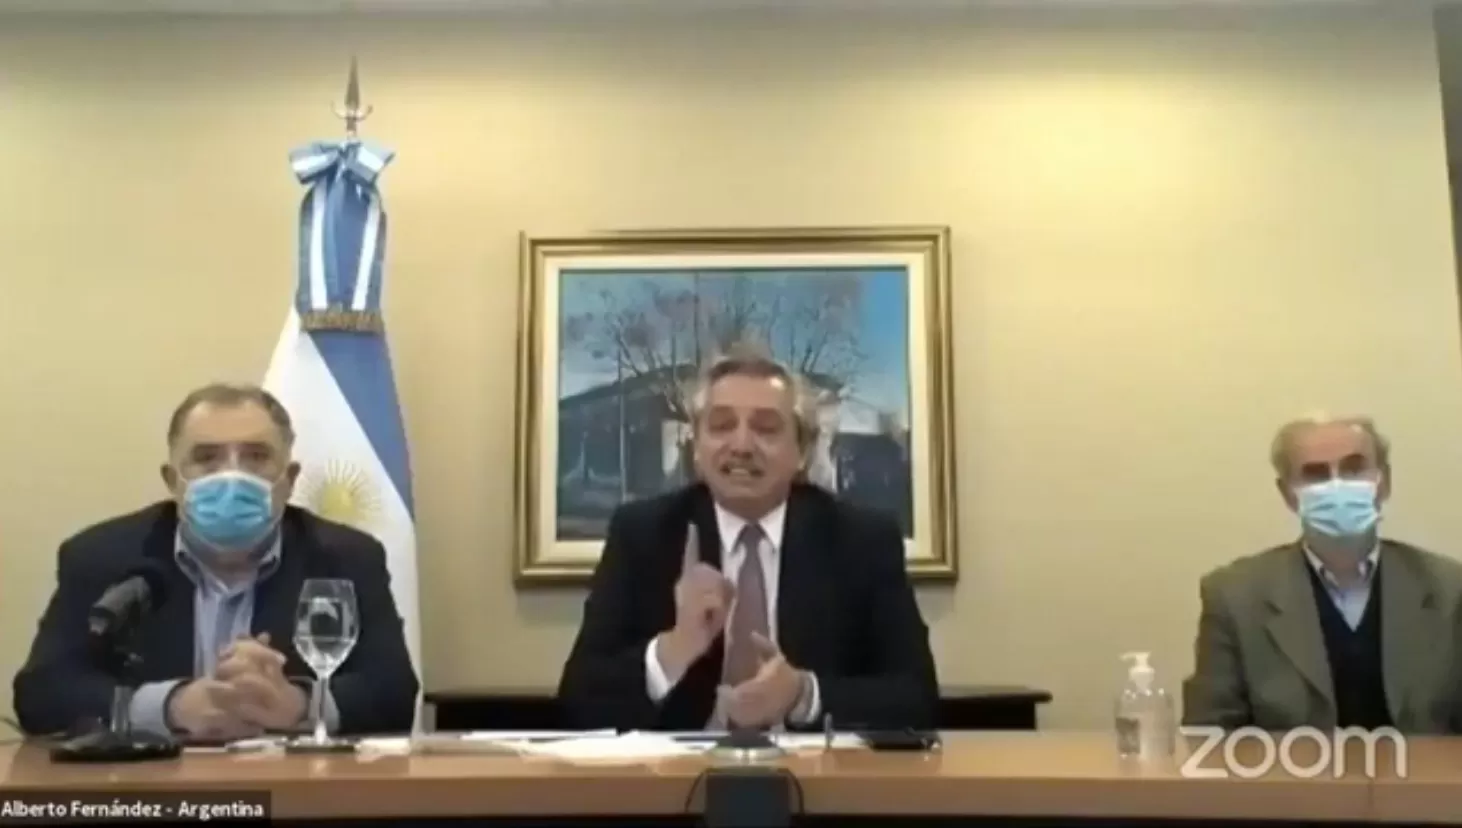 APASIONADO. El presidente, Alberto Fernández, dijo en un encuentro vía Zoom con referentes del Frente de Todos y con militantes, que no ve la hora de que pase la pandemia, porque ese día habrá un banderazo de los argentinos de bien.